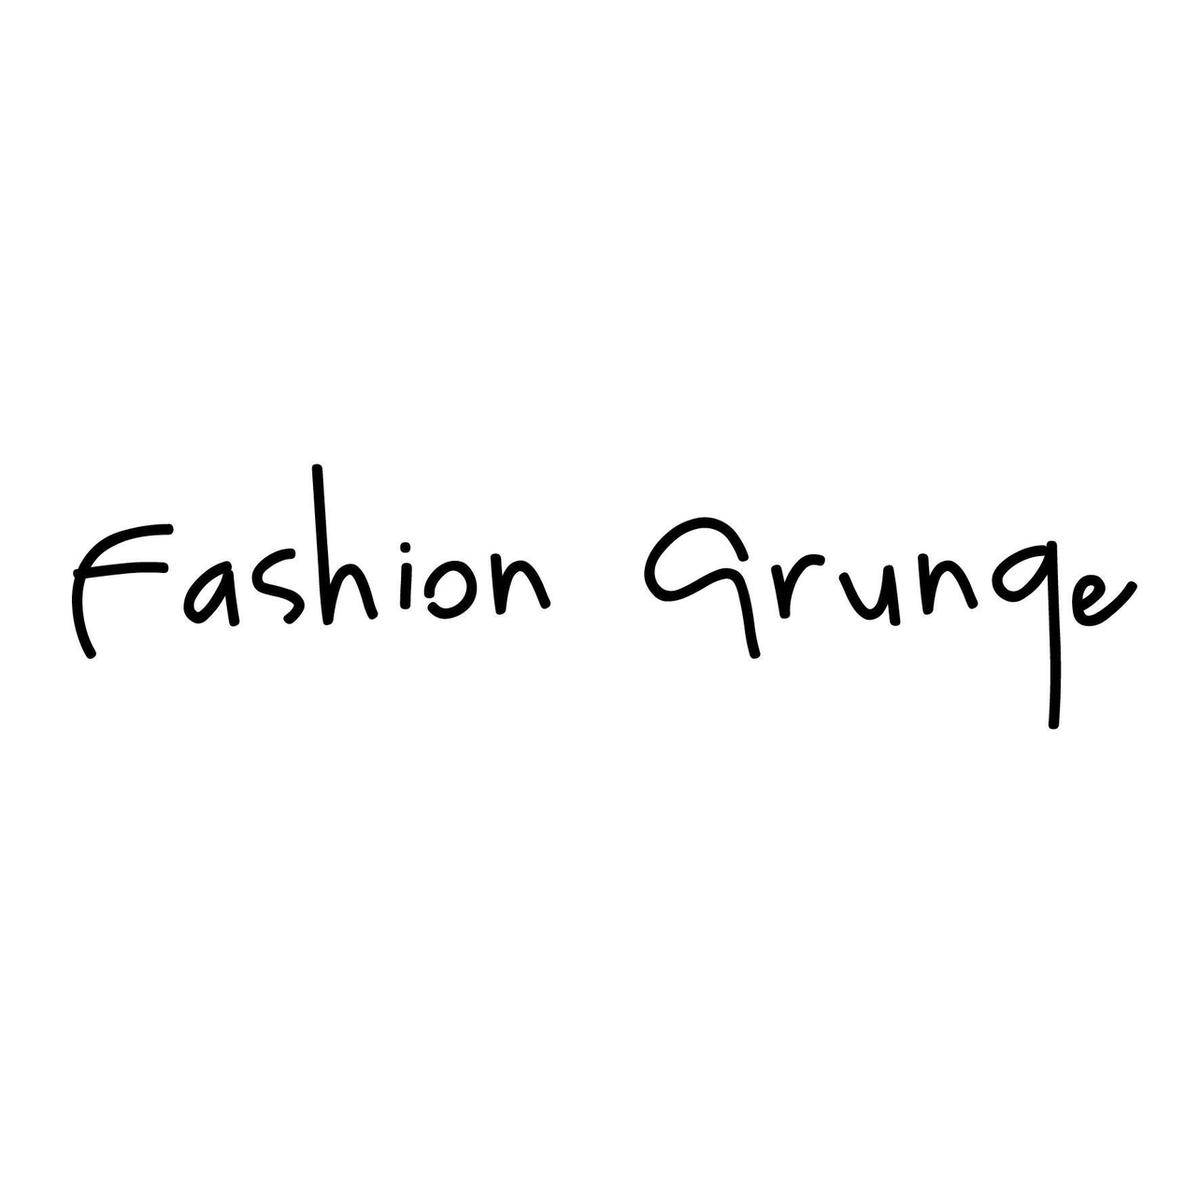 fashiongrunge's images